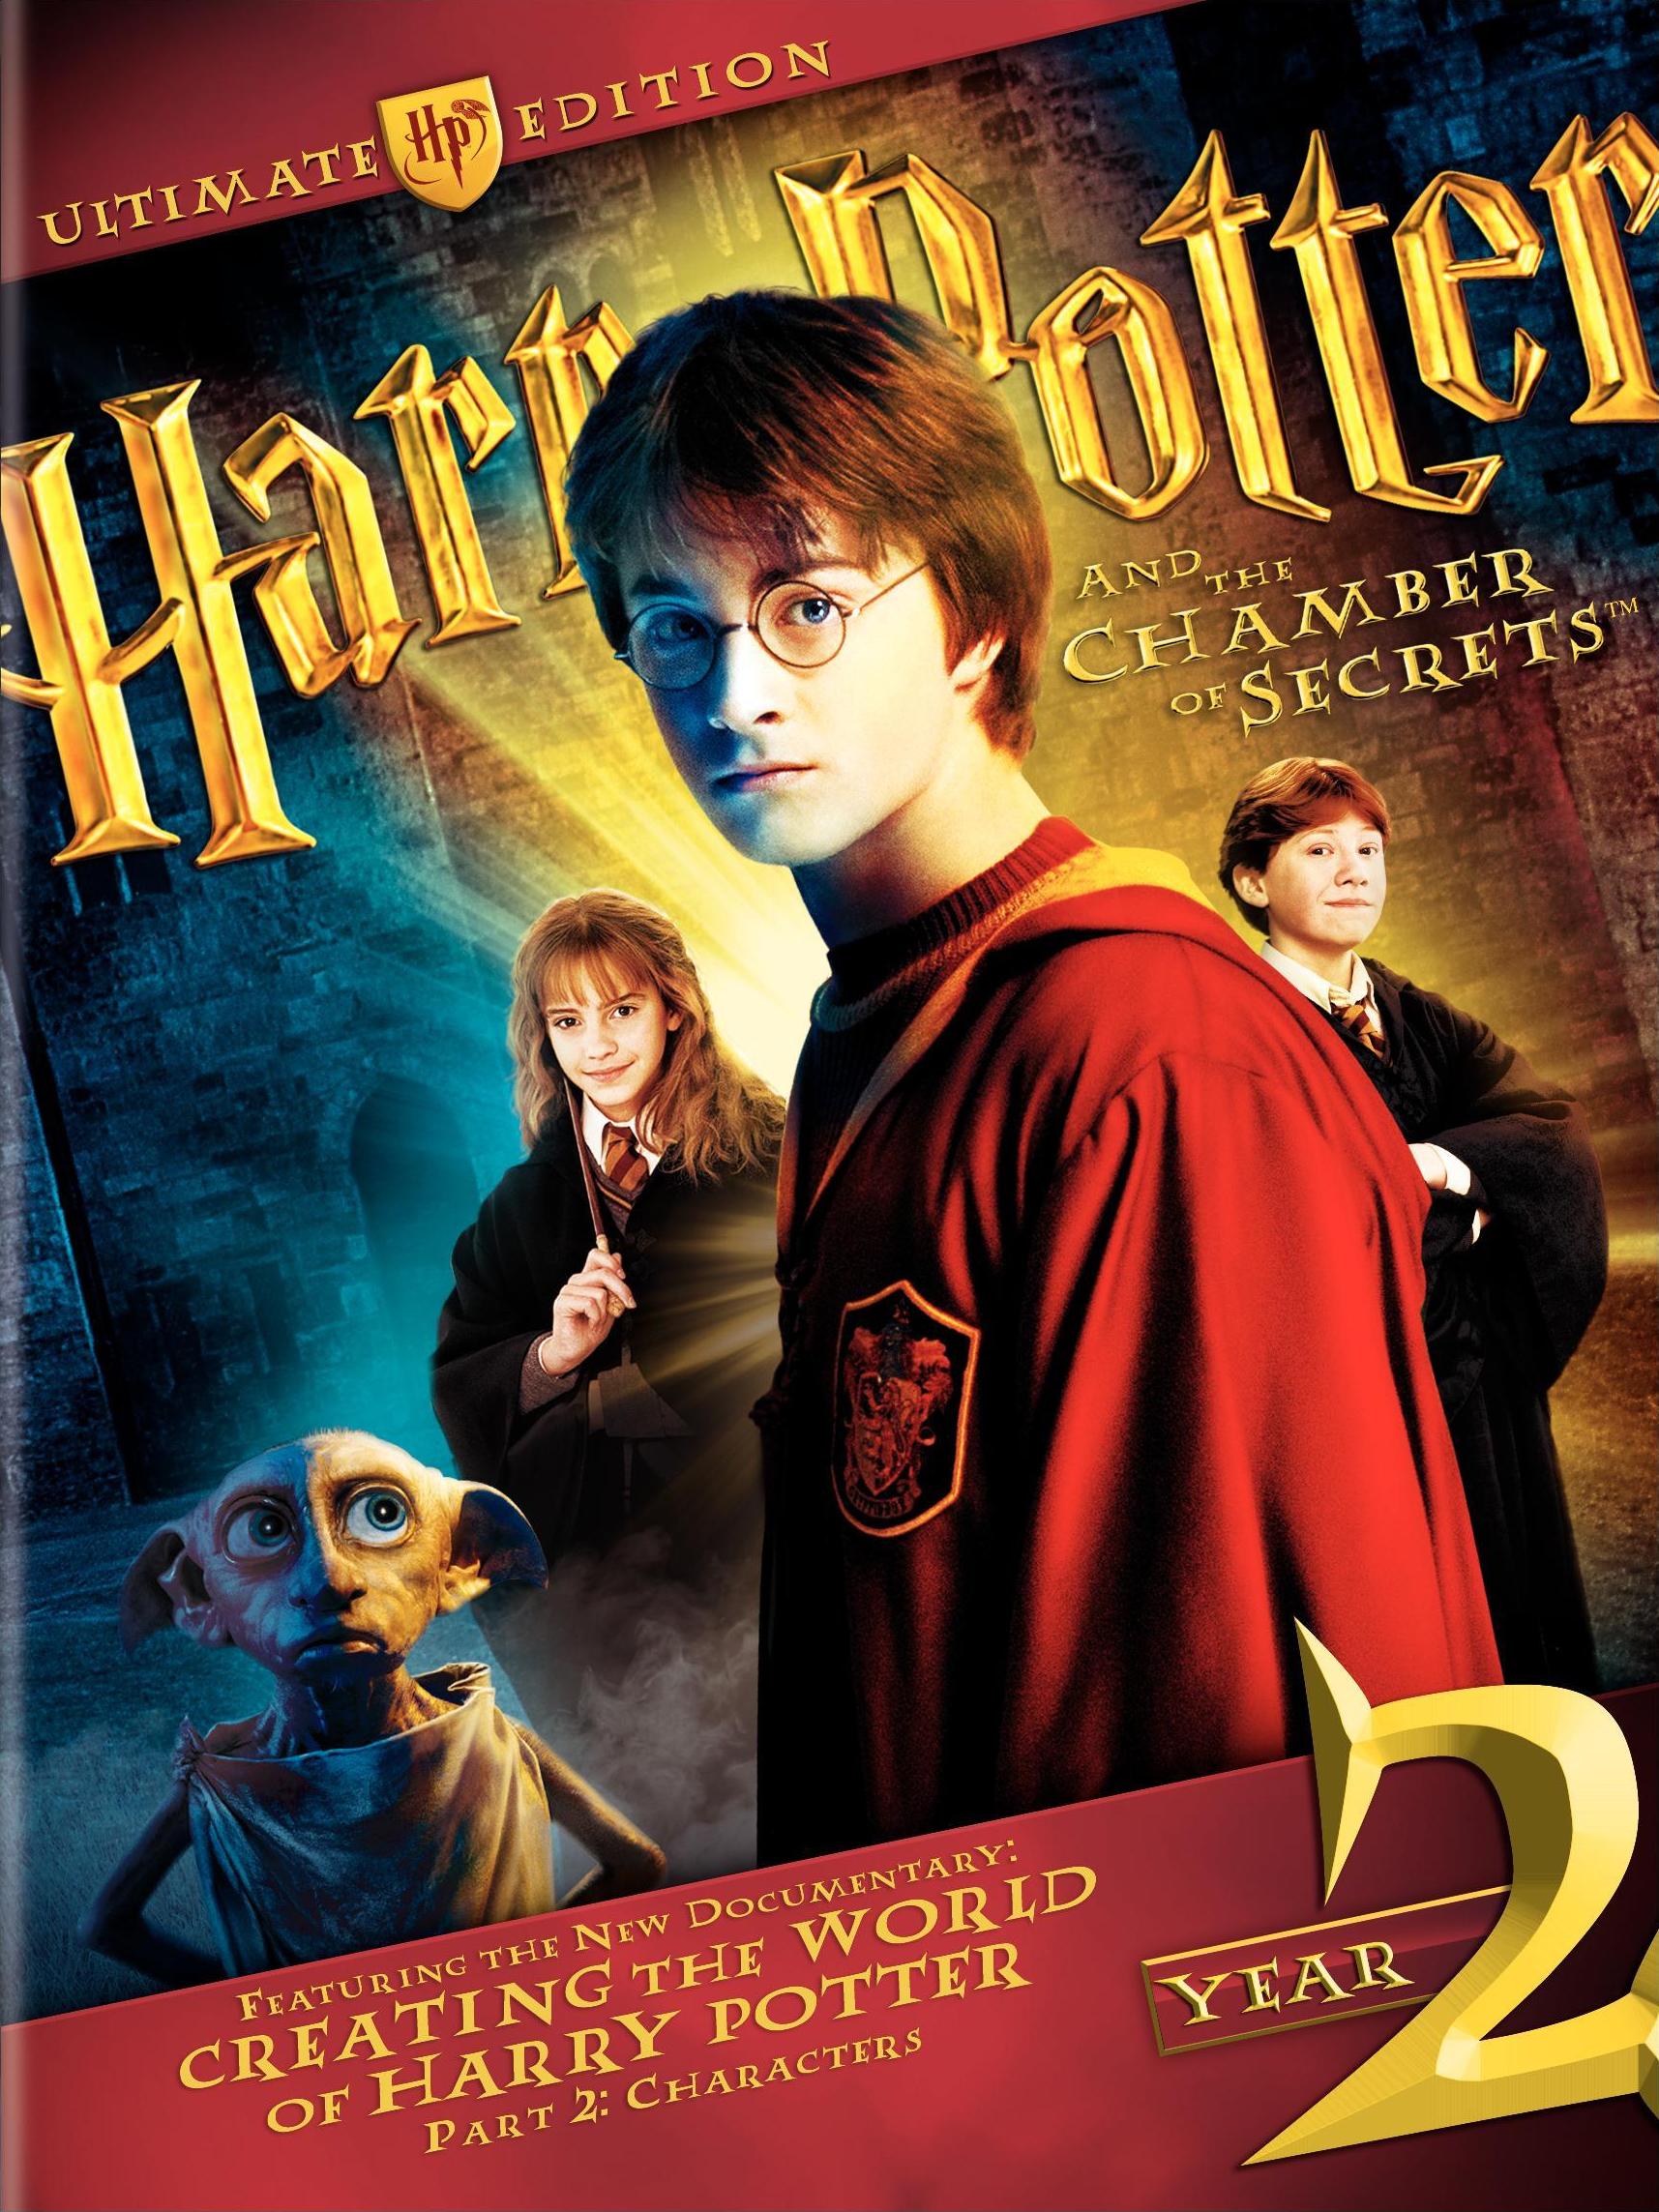 Harry Potter (film series) | Harry Potter Wiki | Fandom